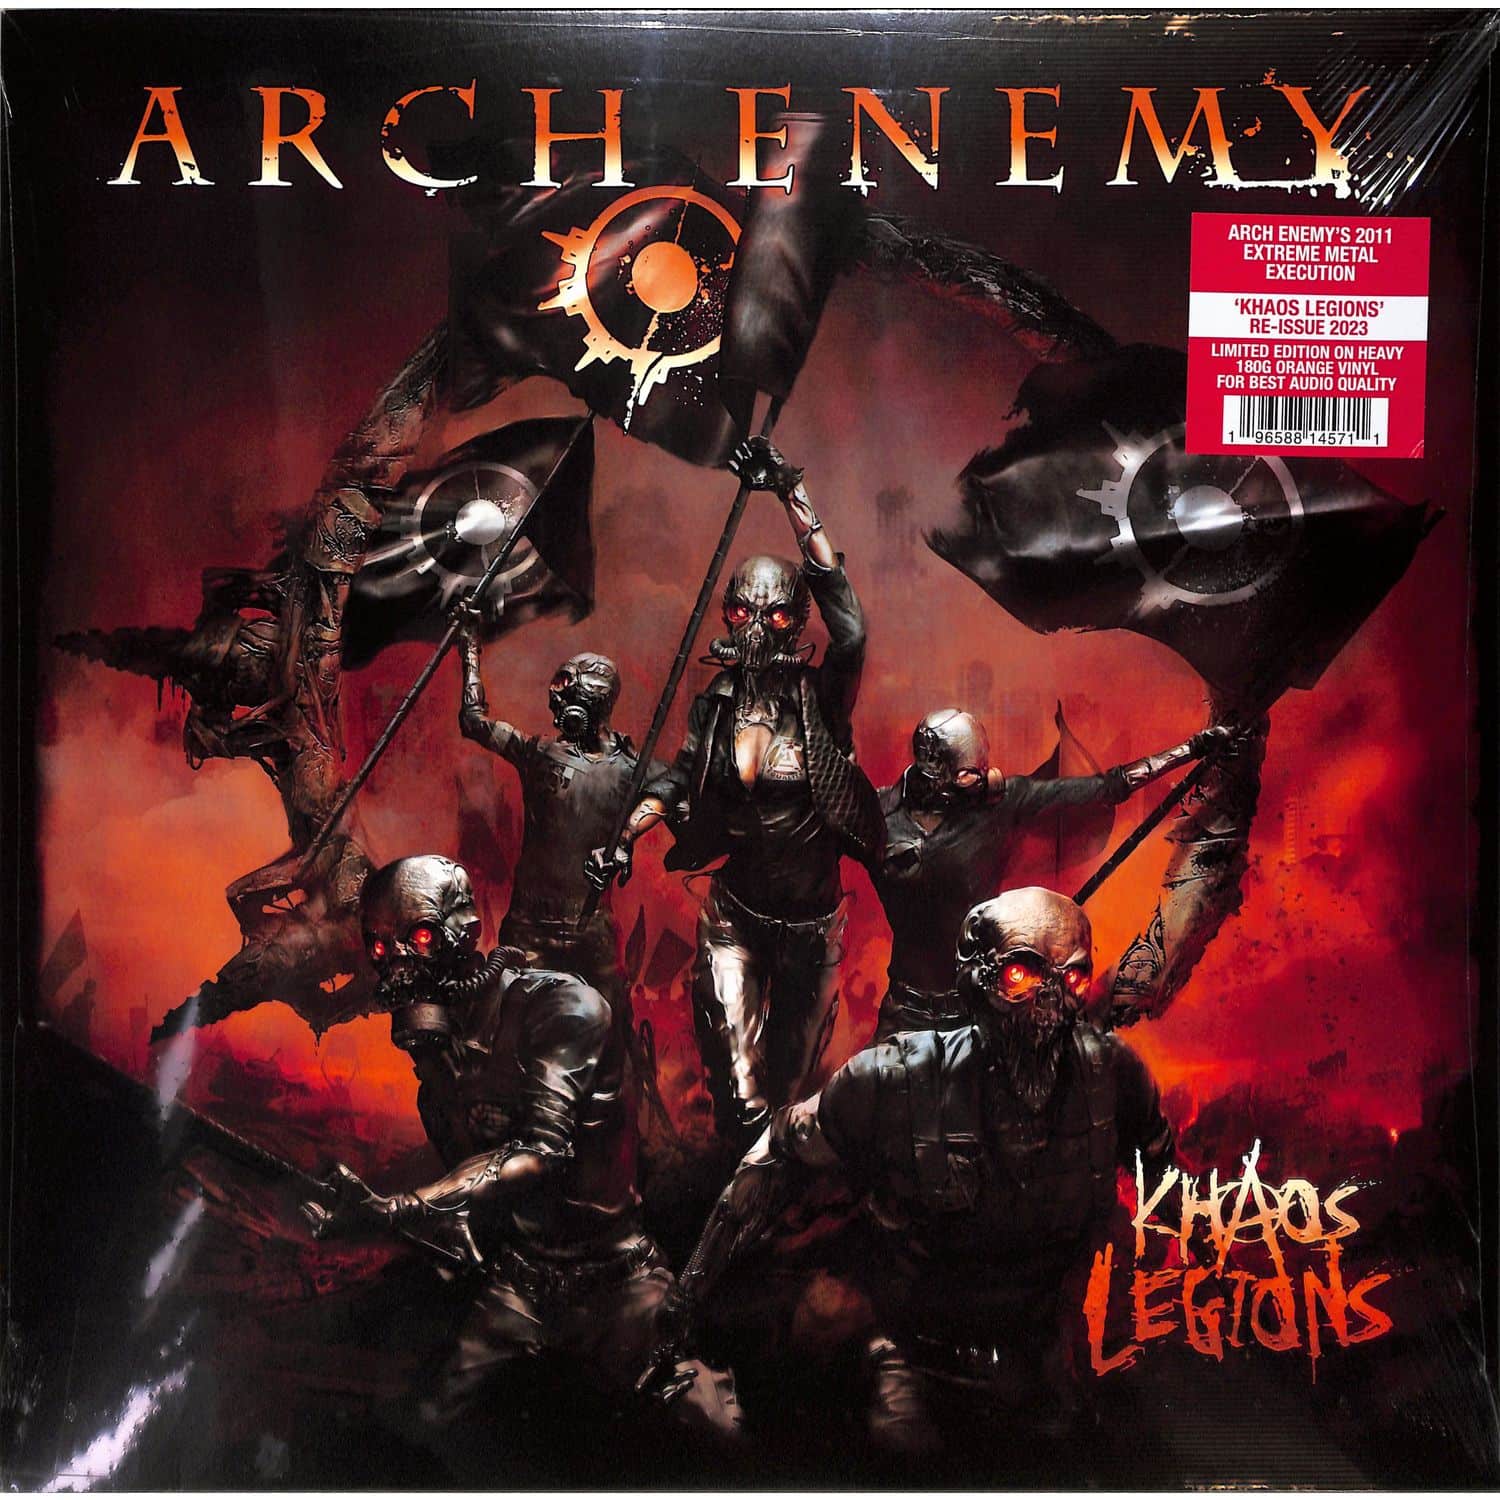 Arch Enemy - KHAOS LEGIONS 